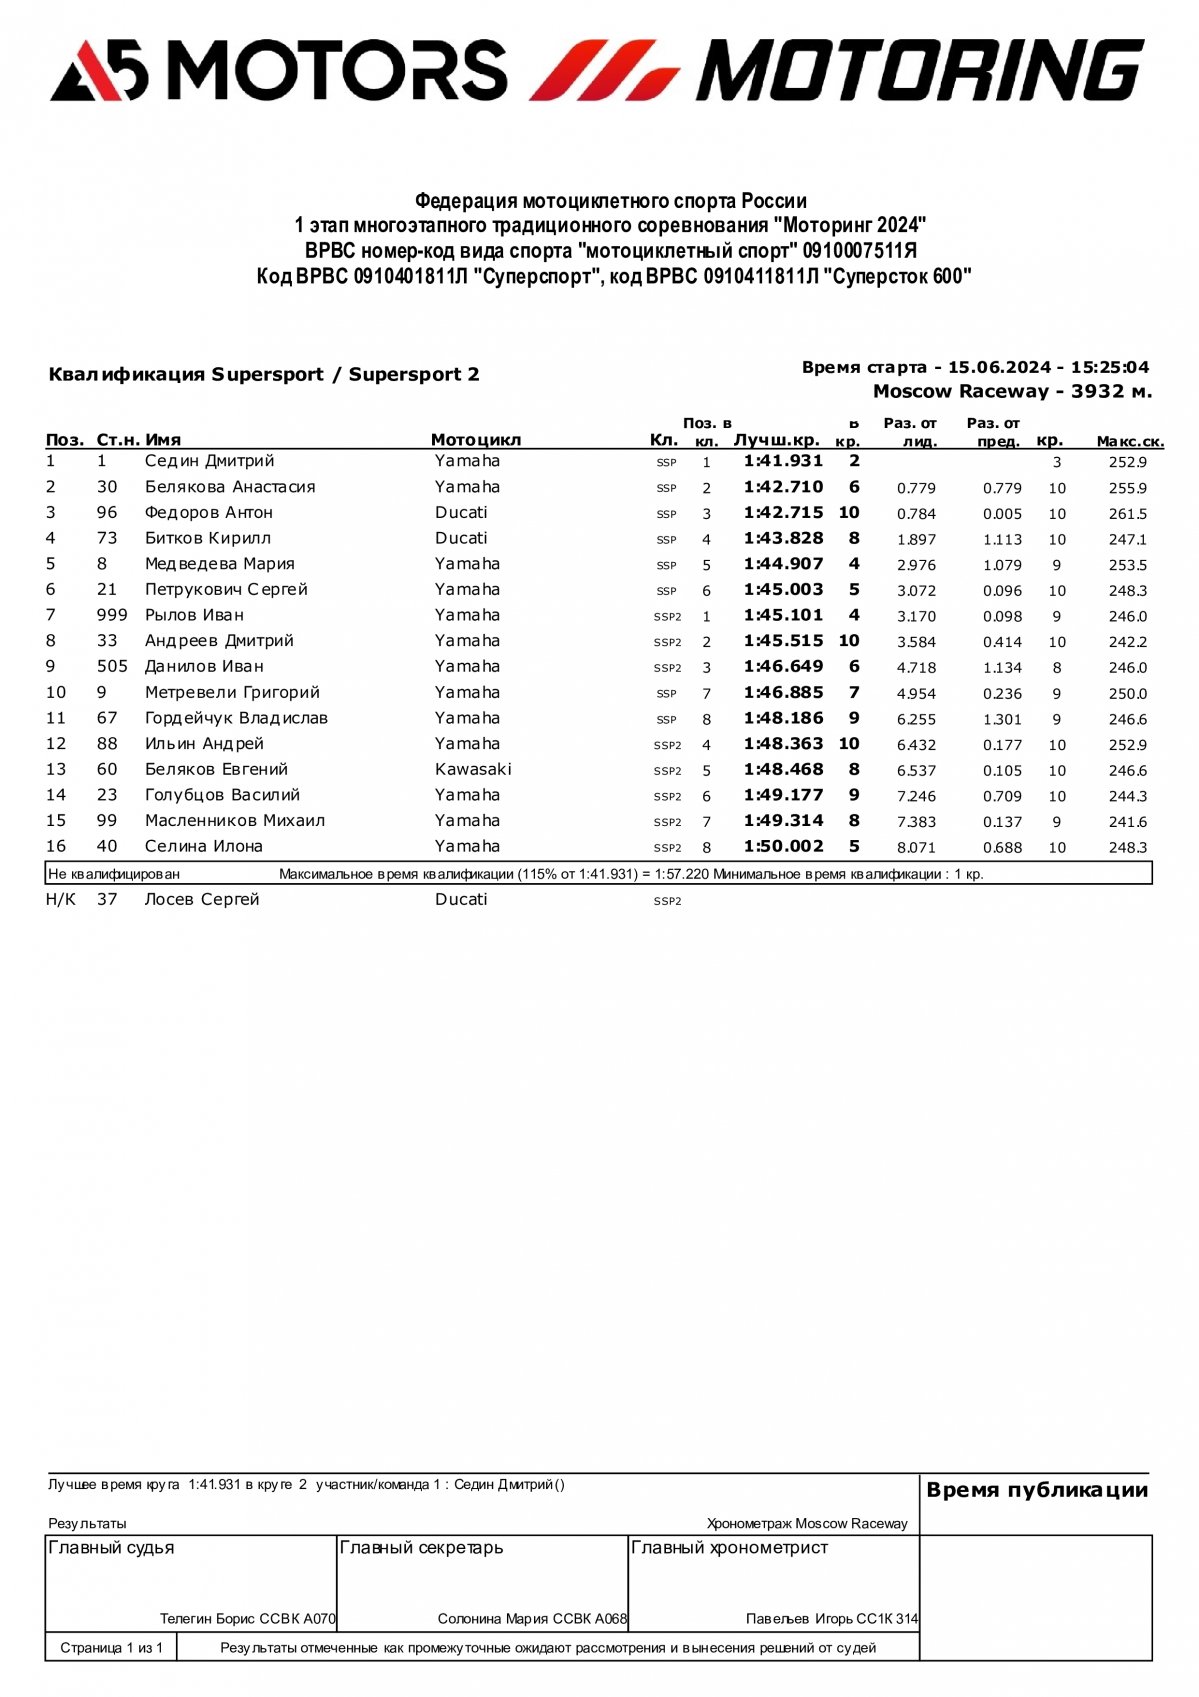 Результаты квалификации 1 этапа Motoring 2024 (Moscow Raceway) - Supersport